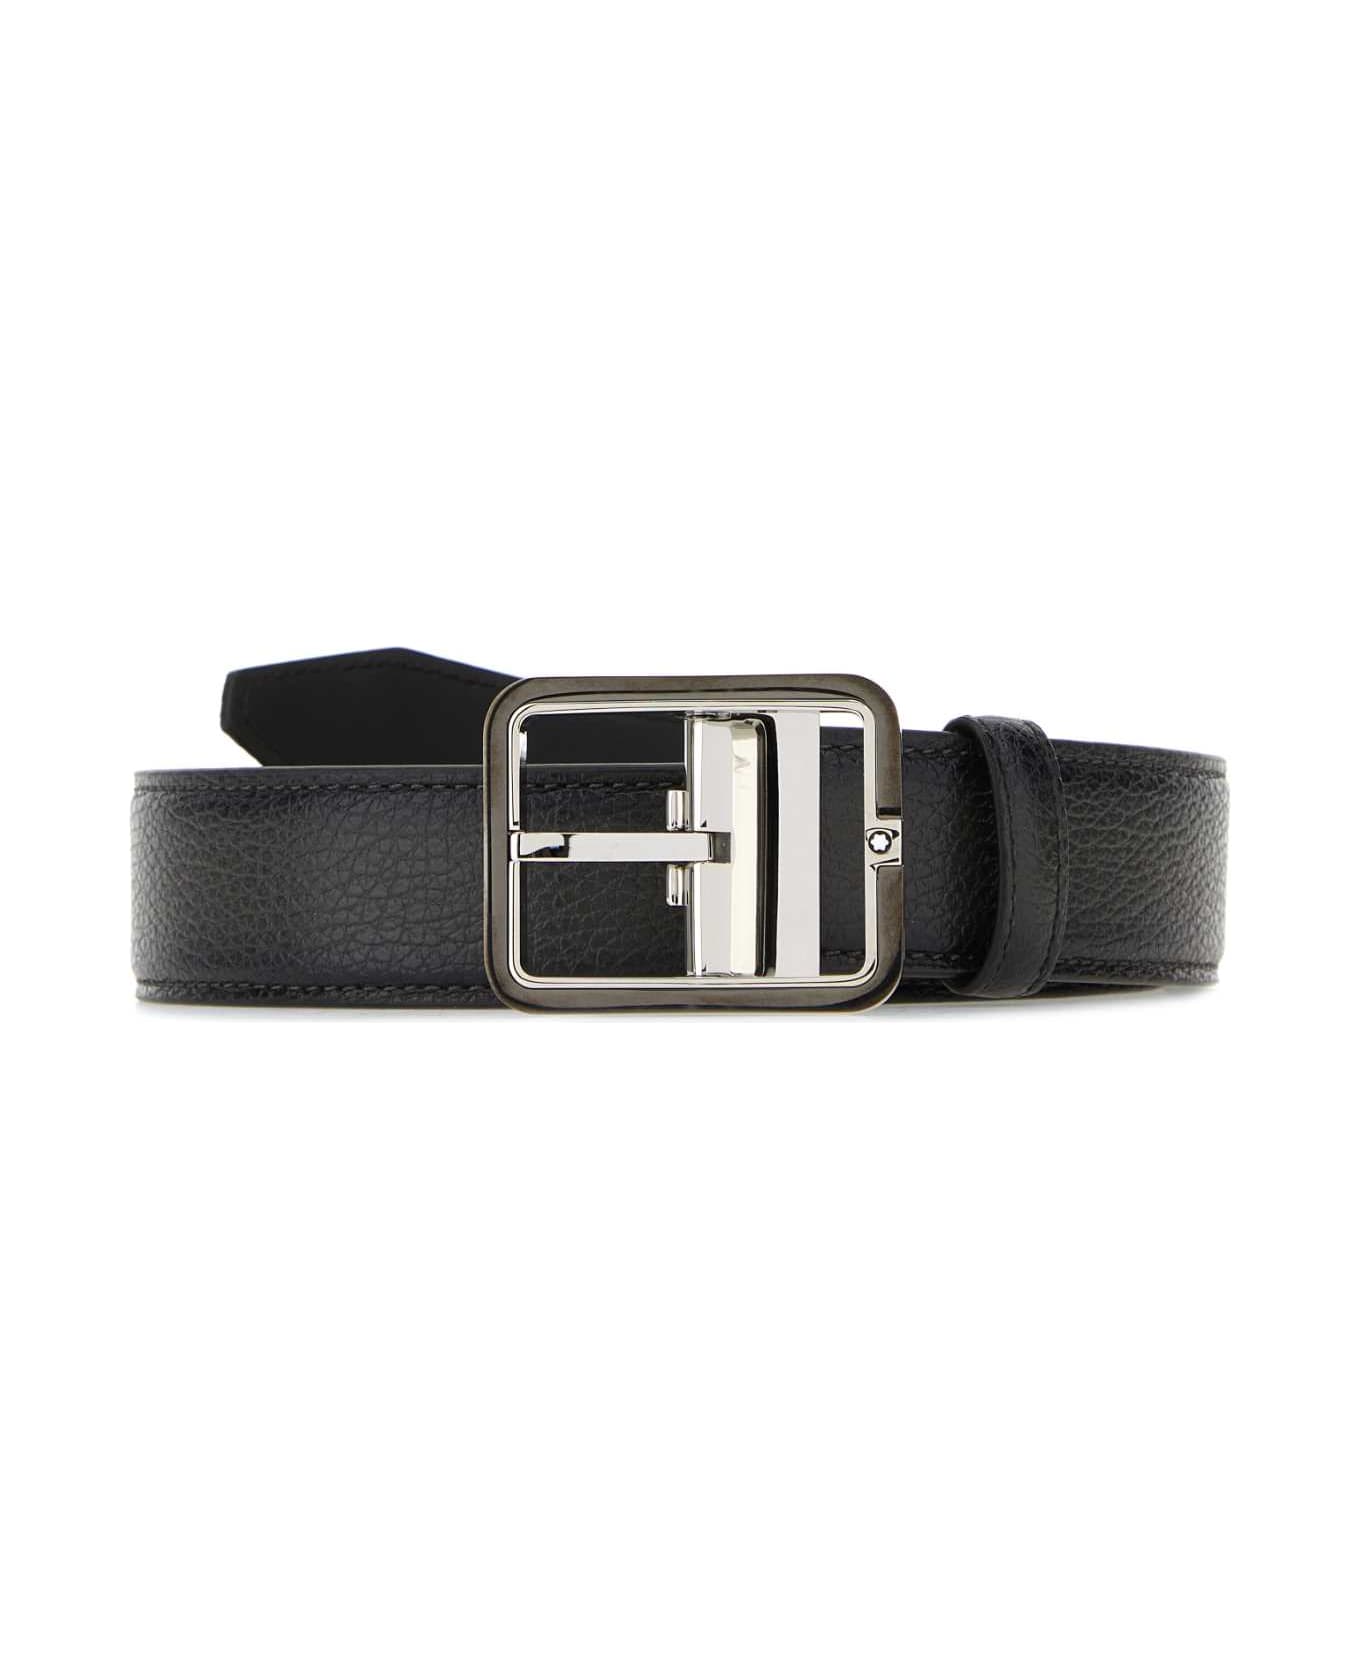 Montblanc Dark Grey Leather Belt - GREYSFUMATO name:456